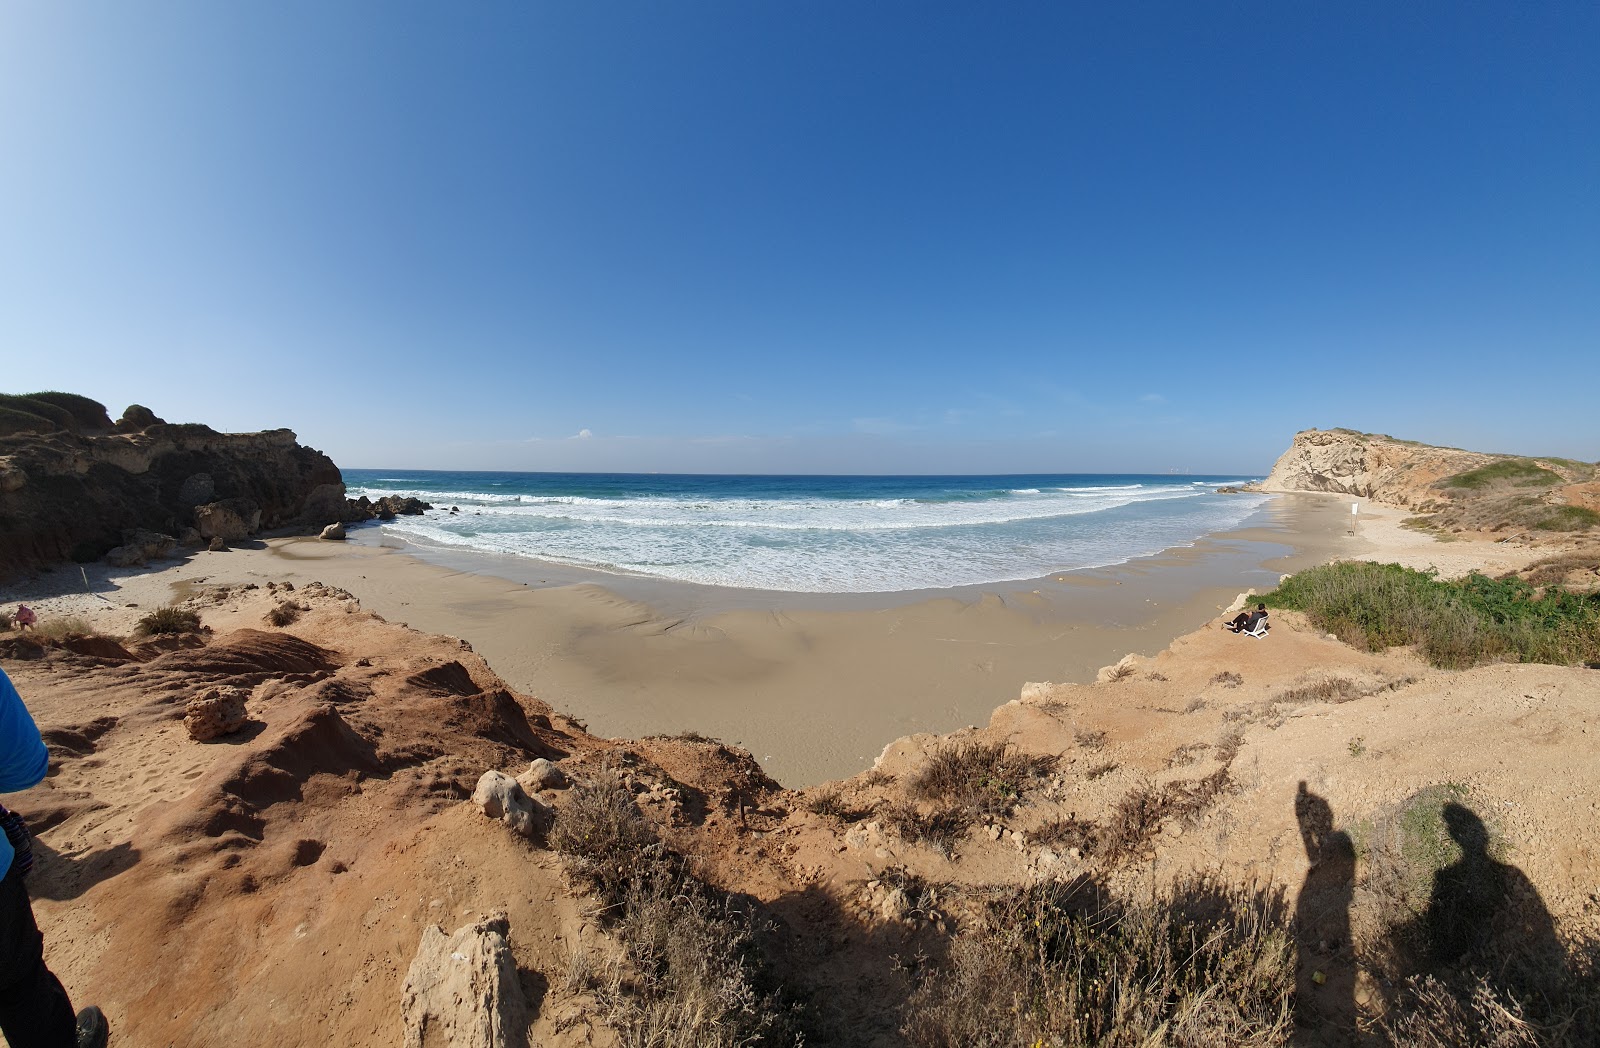 Foto di Gedor Sea beach ubicato in zona naturale